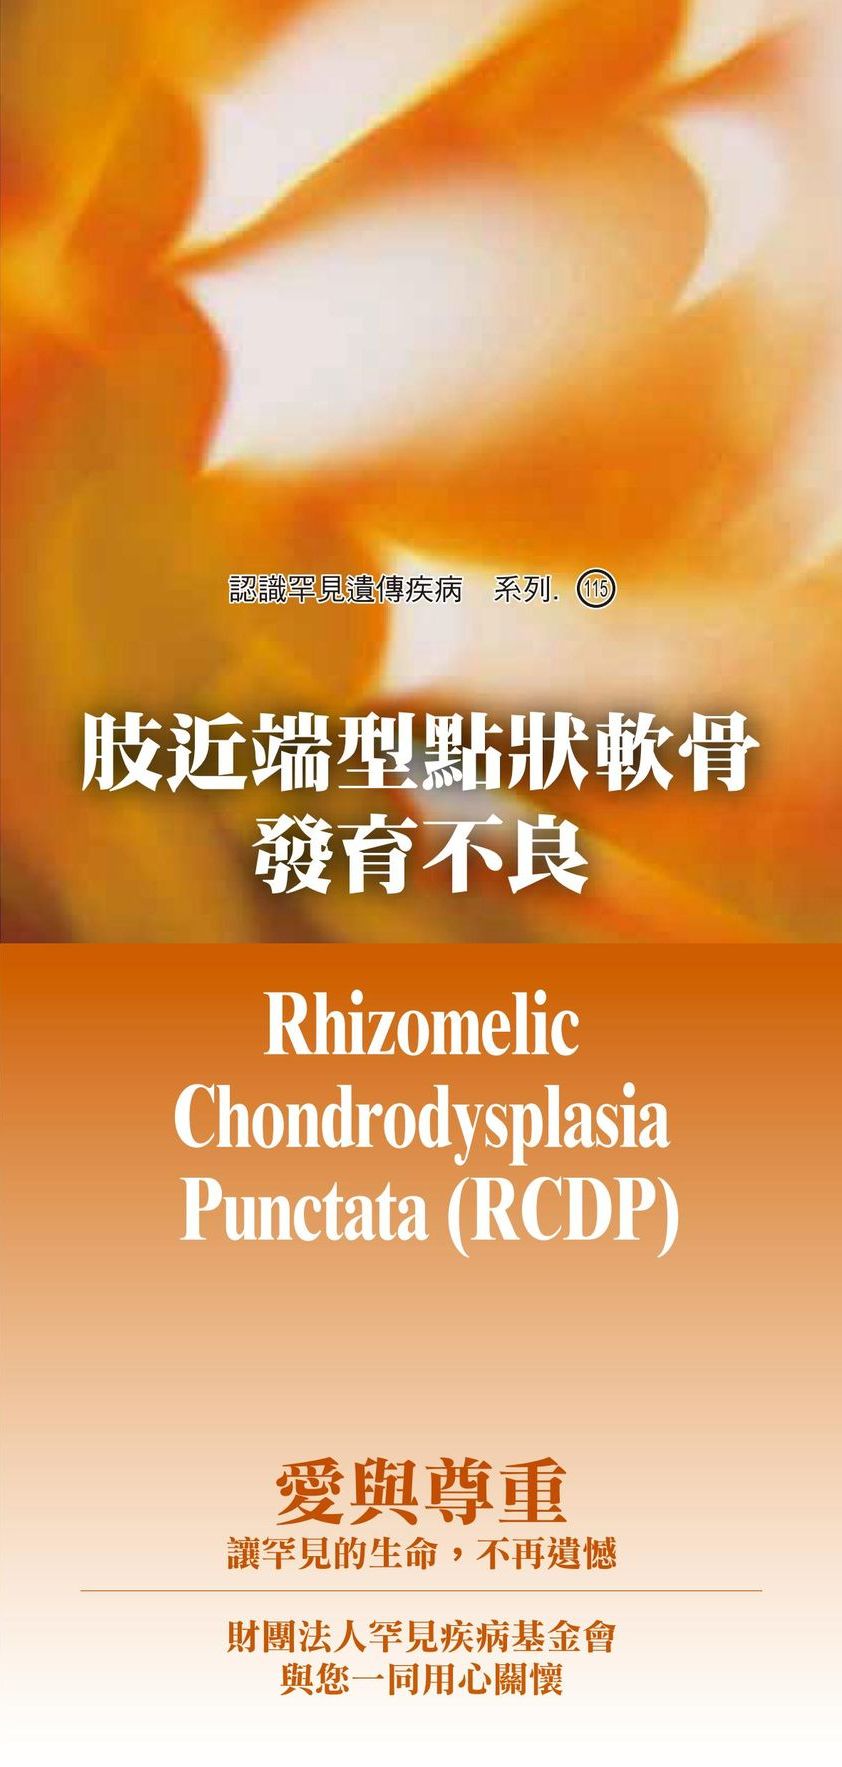 肢近端型點狀軟骨發育不良  ( Rhizomelic Chondrodysplasia Punctata )